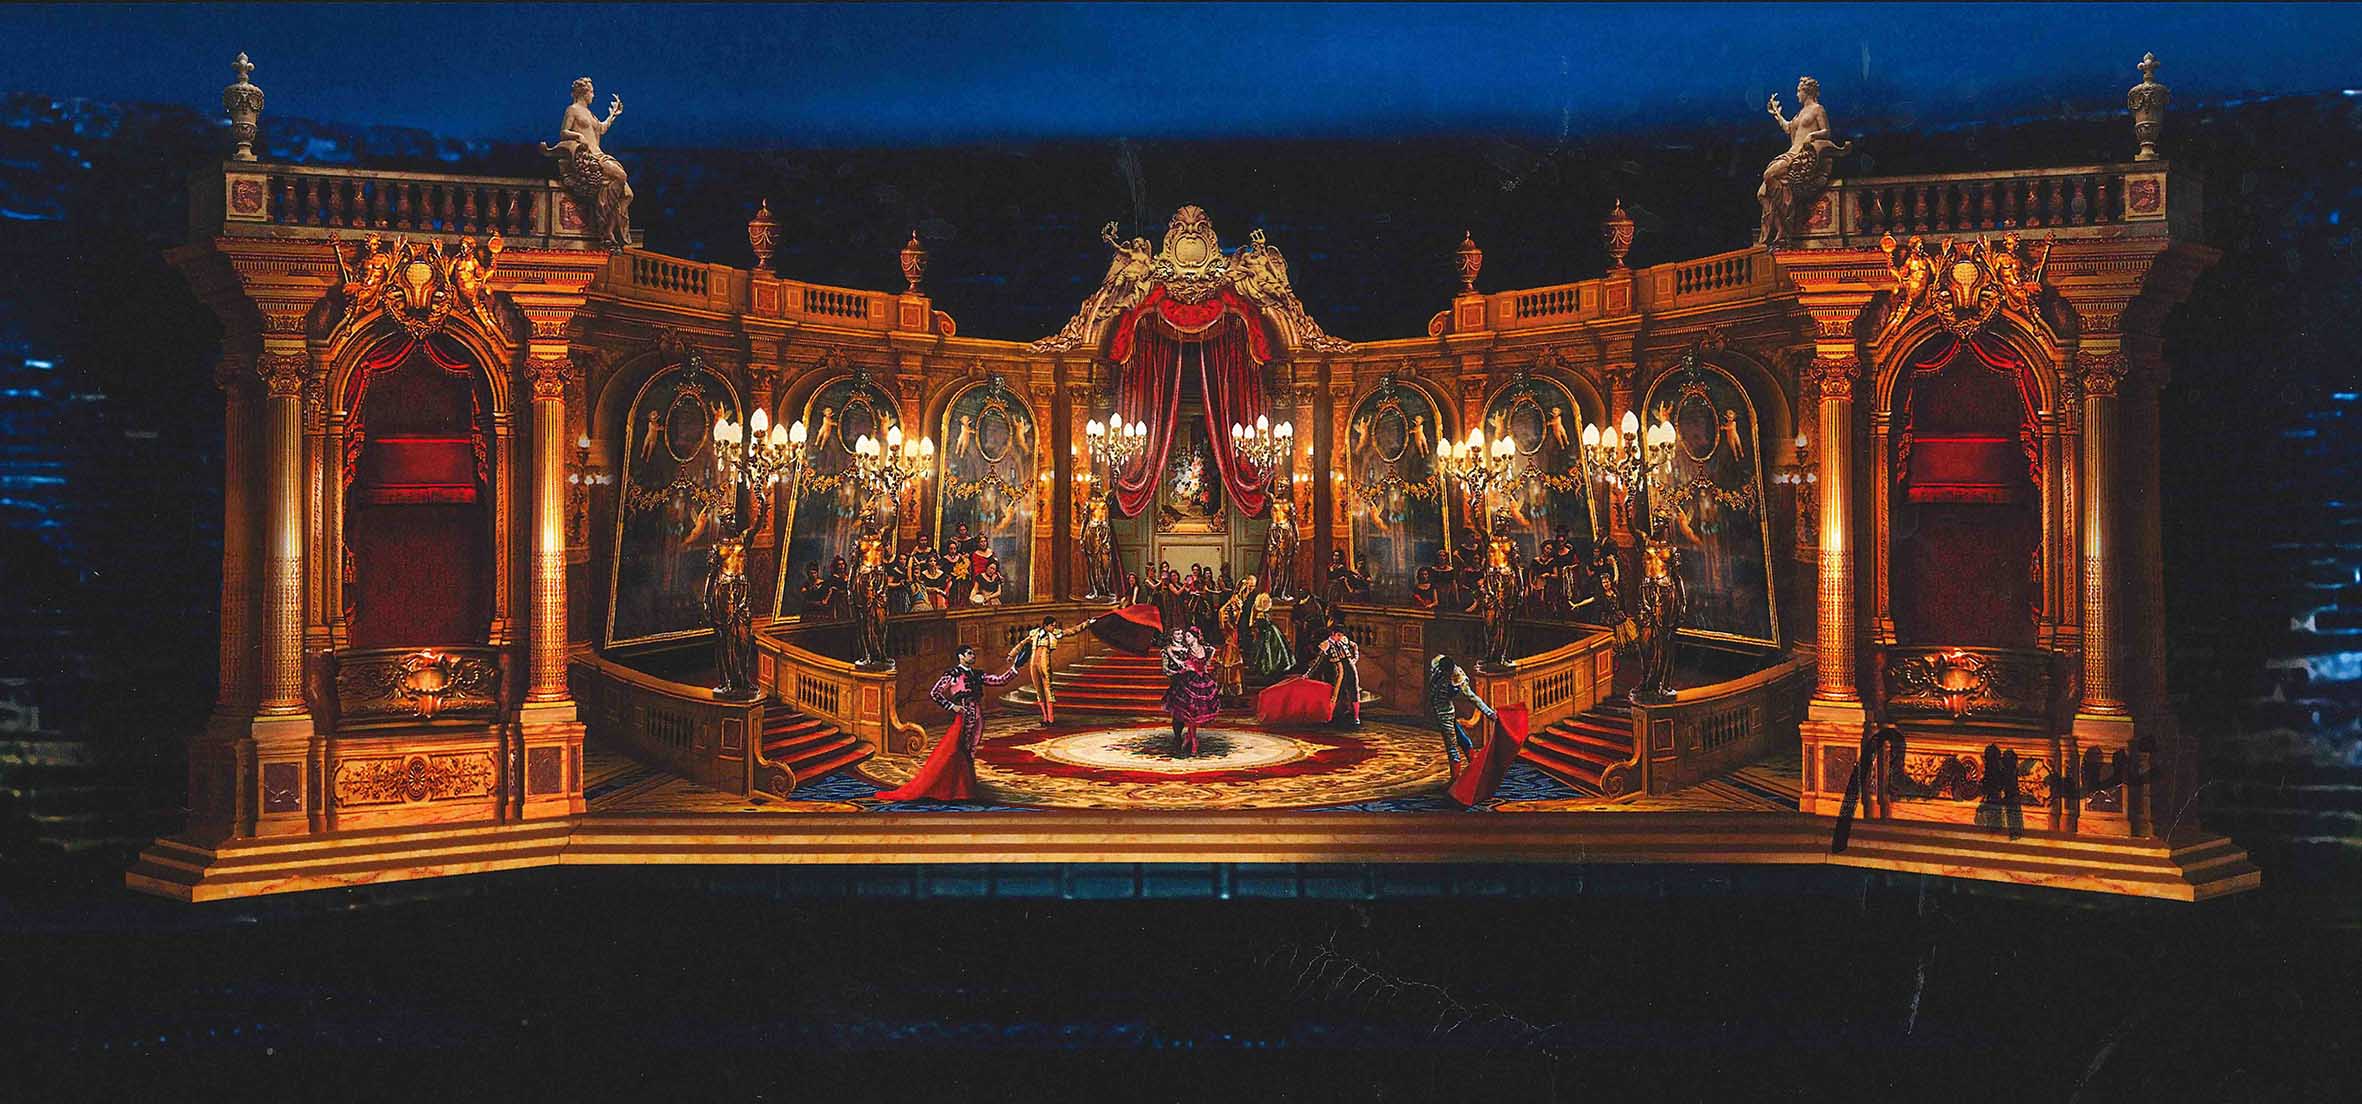 Arena di Verona Opera Festival